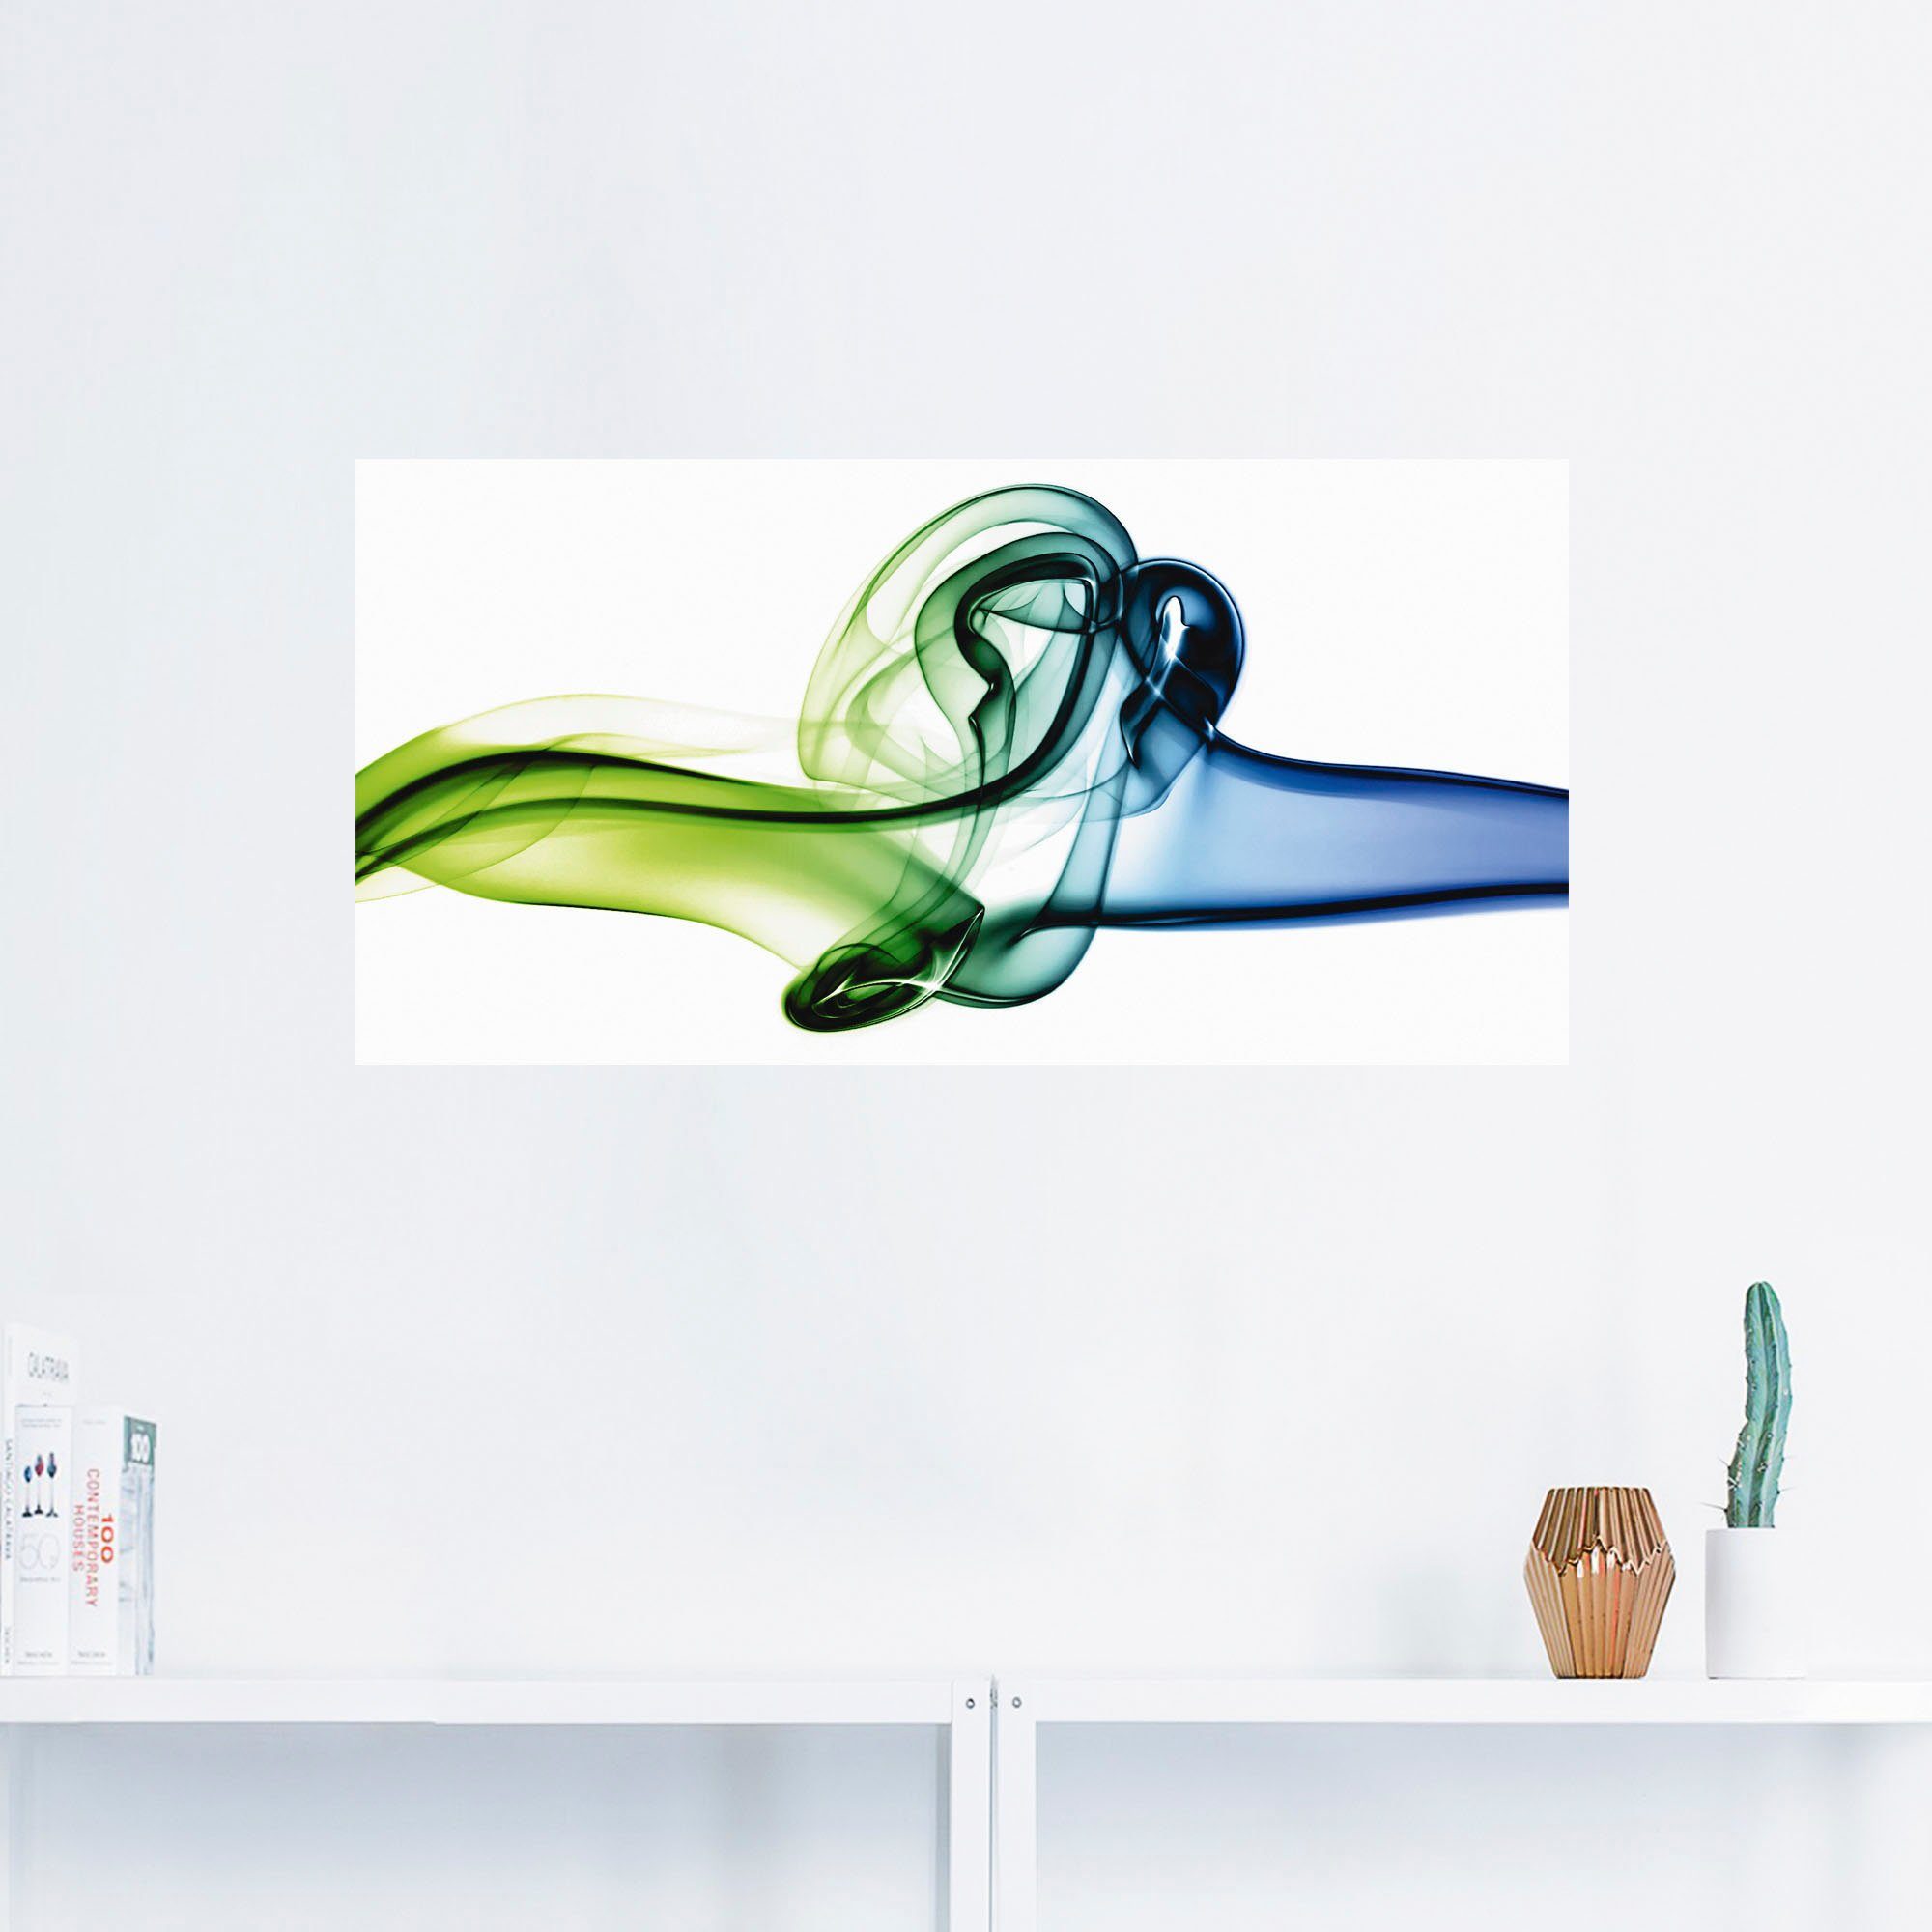 Artland Artprint Botsing van blauw en groen in vele afmetingen & productsoorten - artprint van aluminium / artprint voor buiten, artprint op linnen, poster, muursticker / wandfolie